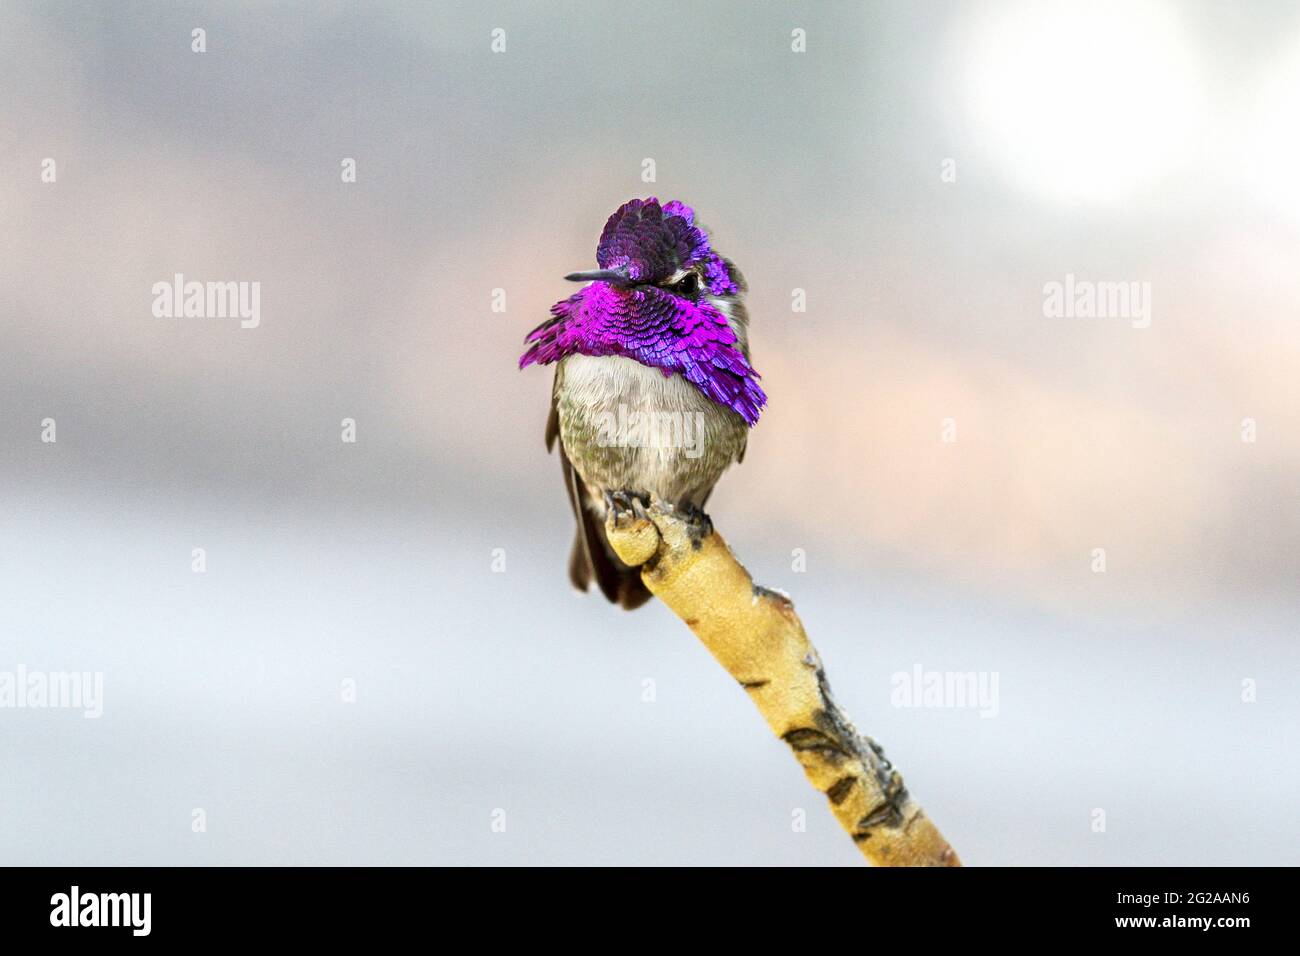 Sulla punta di un singolo ramo si erge un colibrì di un colorato maschio Costa, con un cappuccio viola e una gola vibranti e iridescenti, che guarda la telecamera con h. Foto Stock